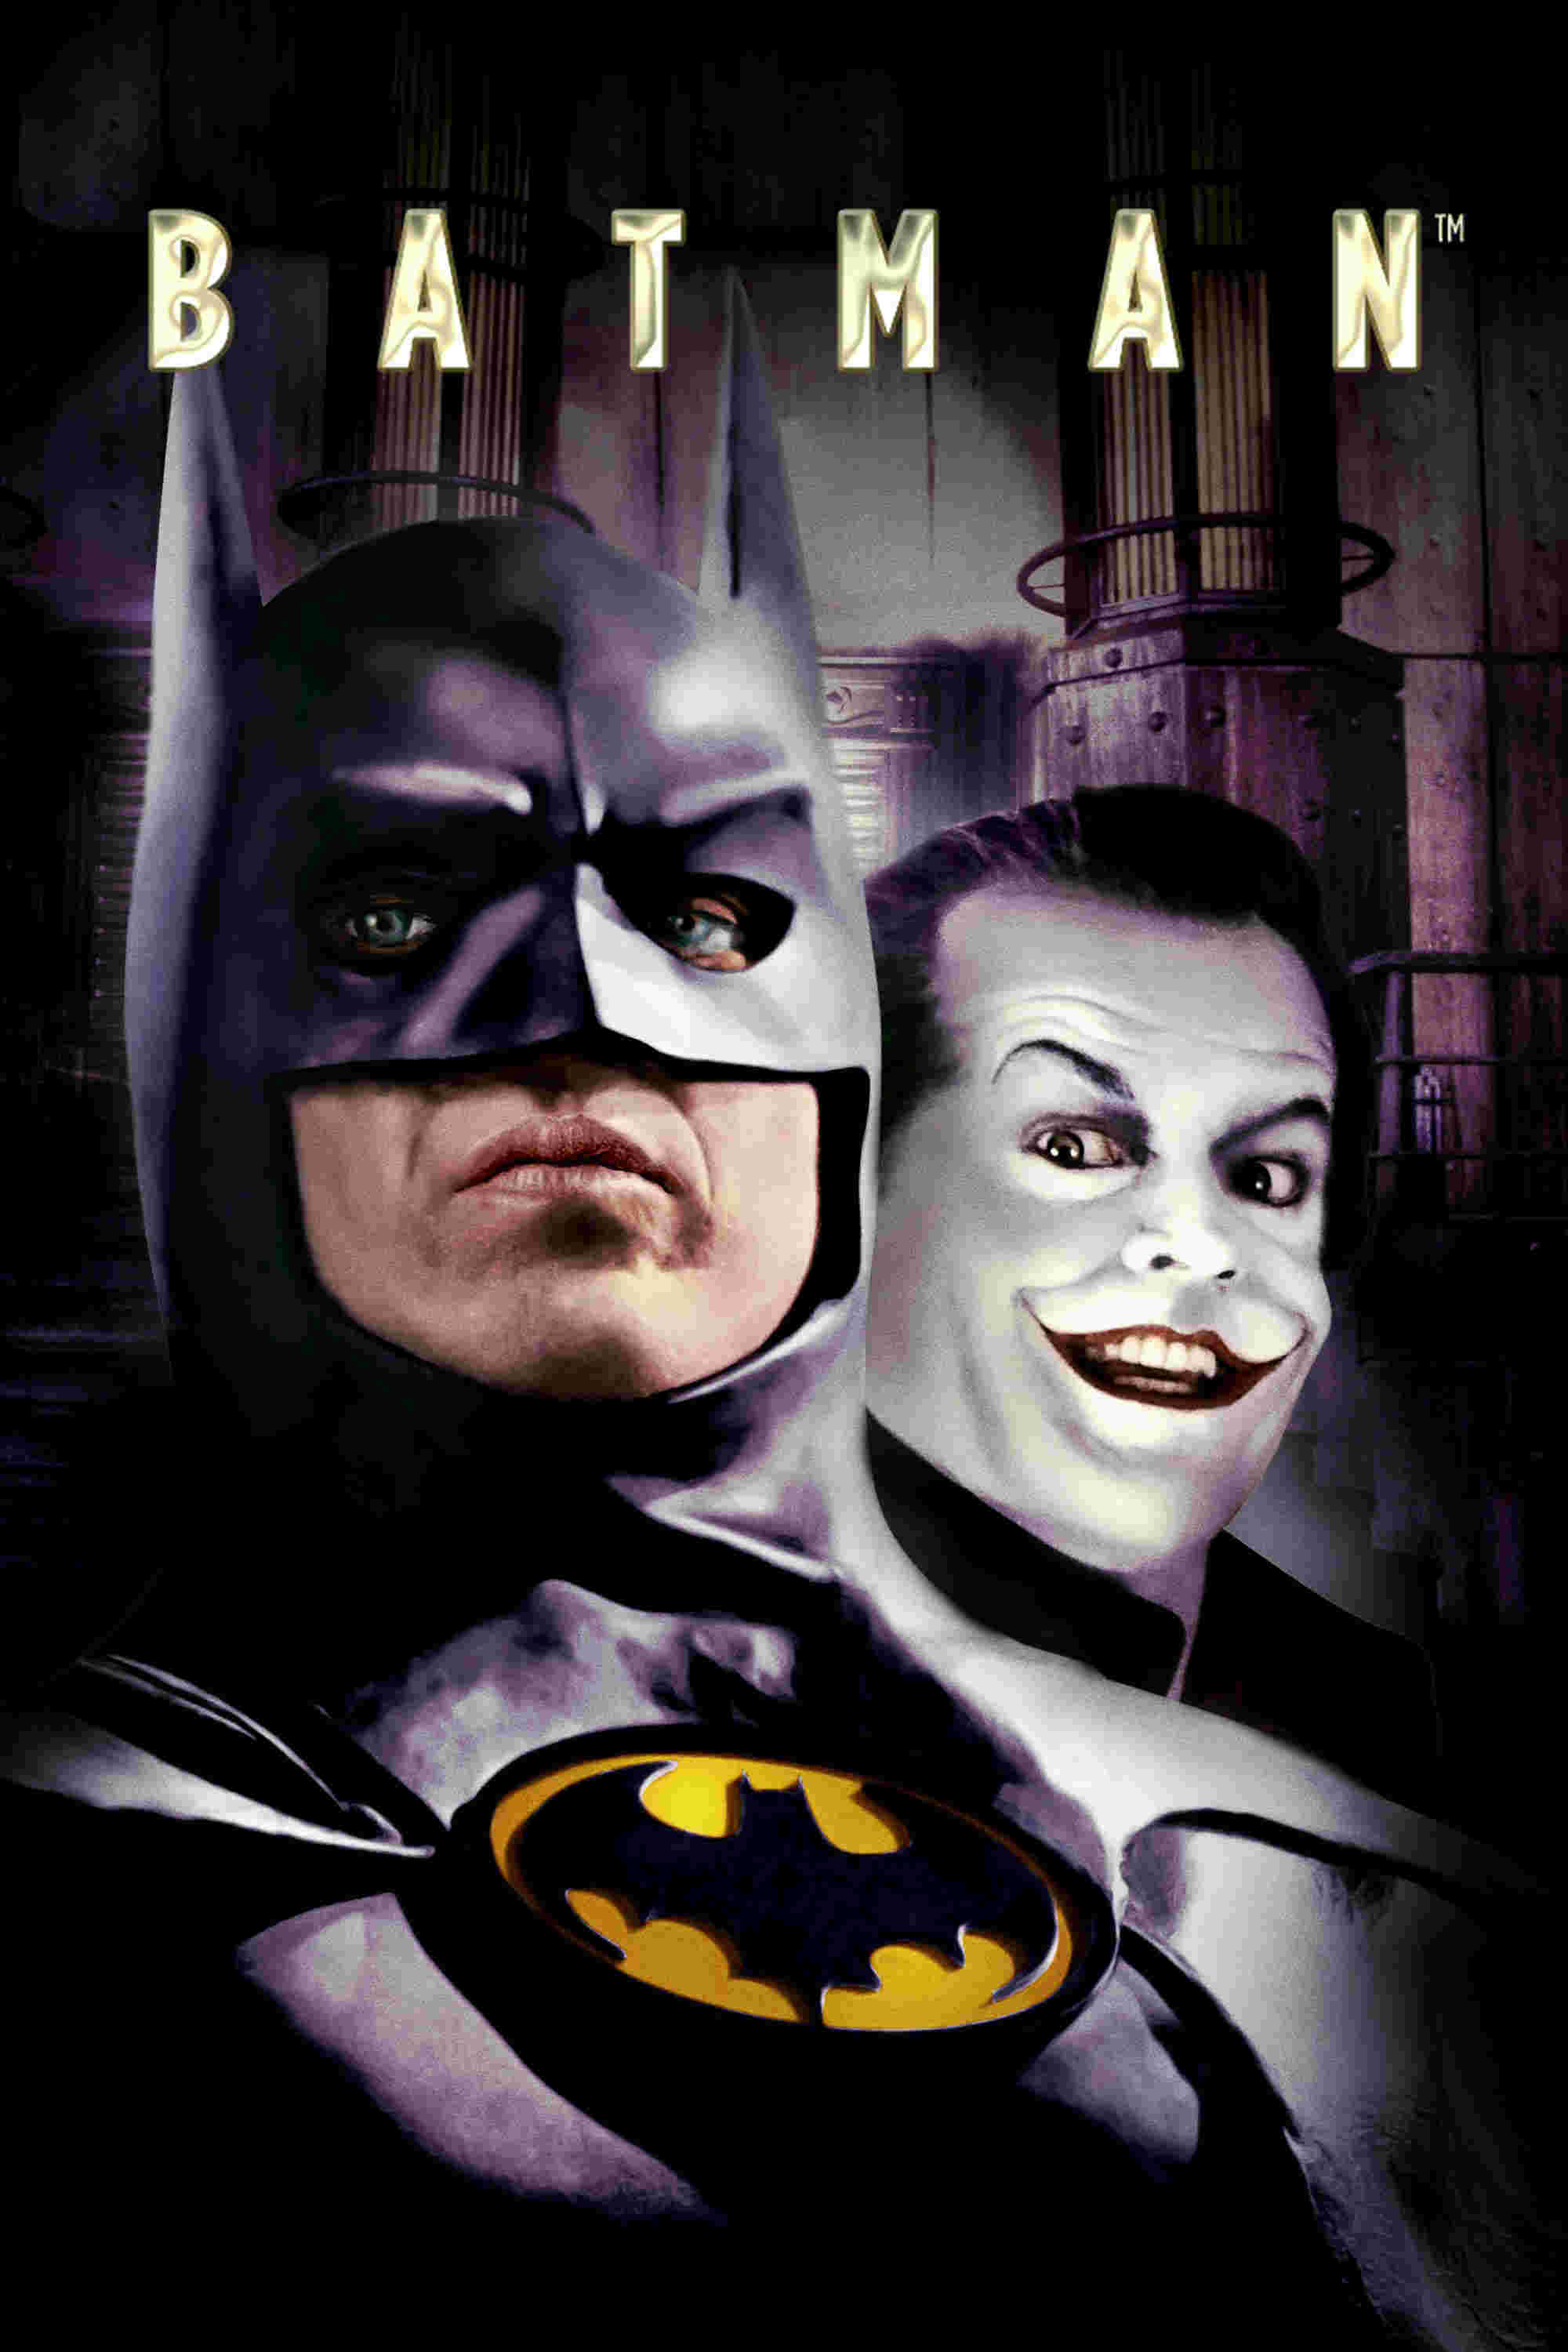 Batman (1989) DVD cover – Dangerous Universe